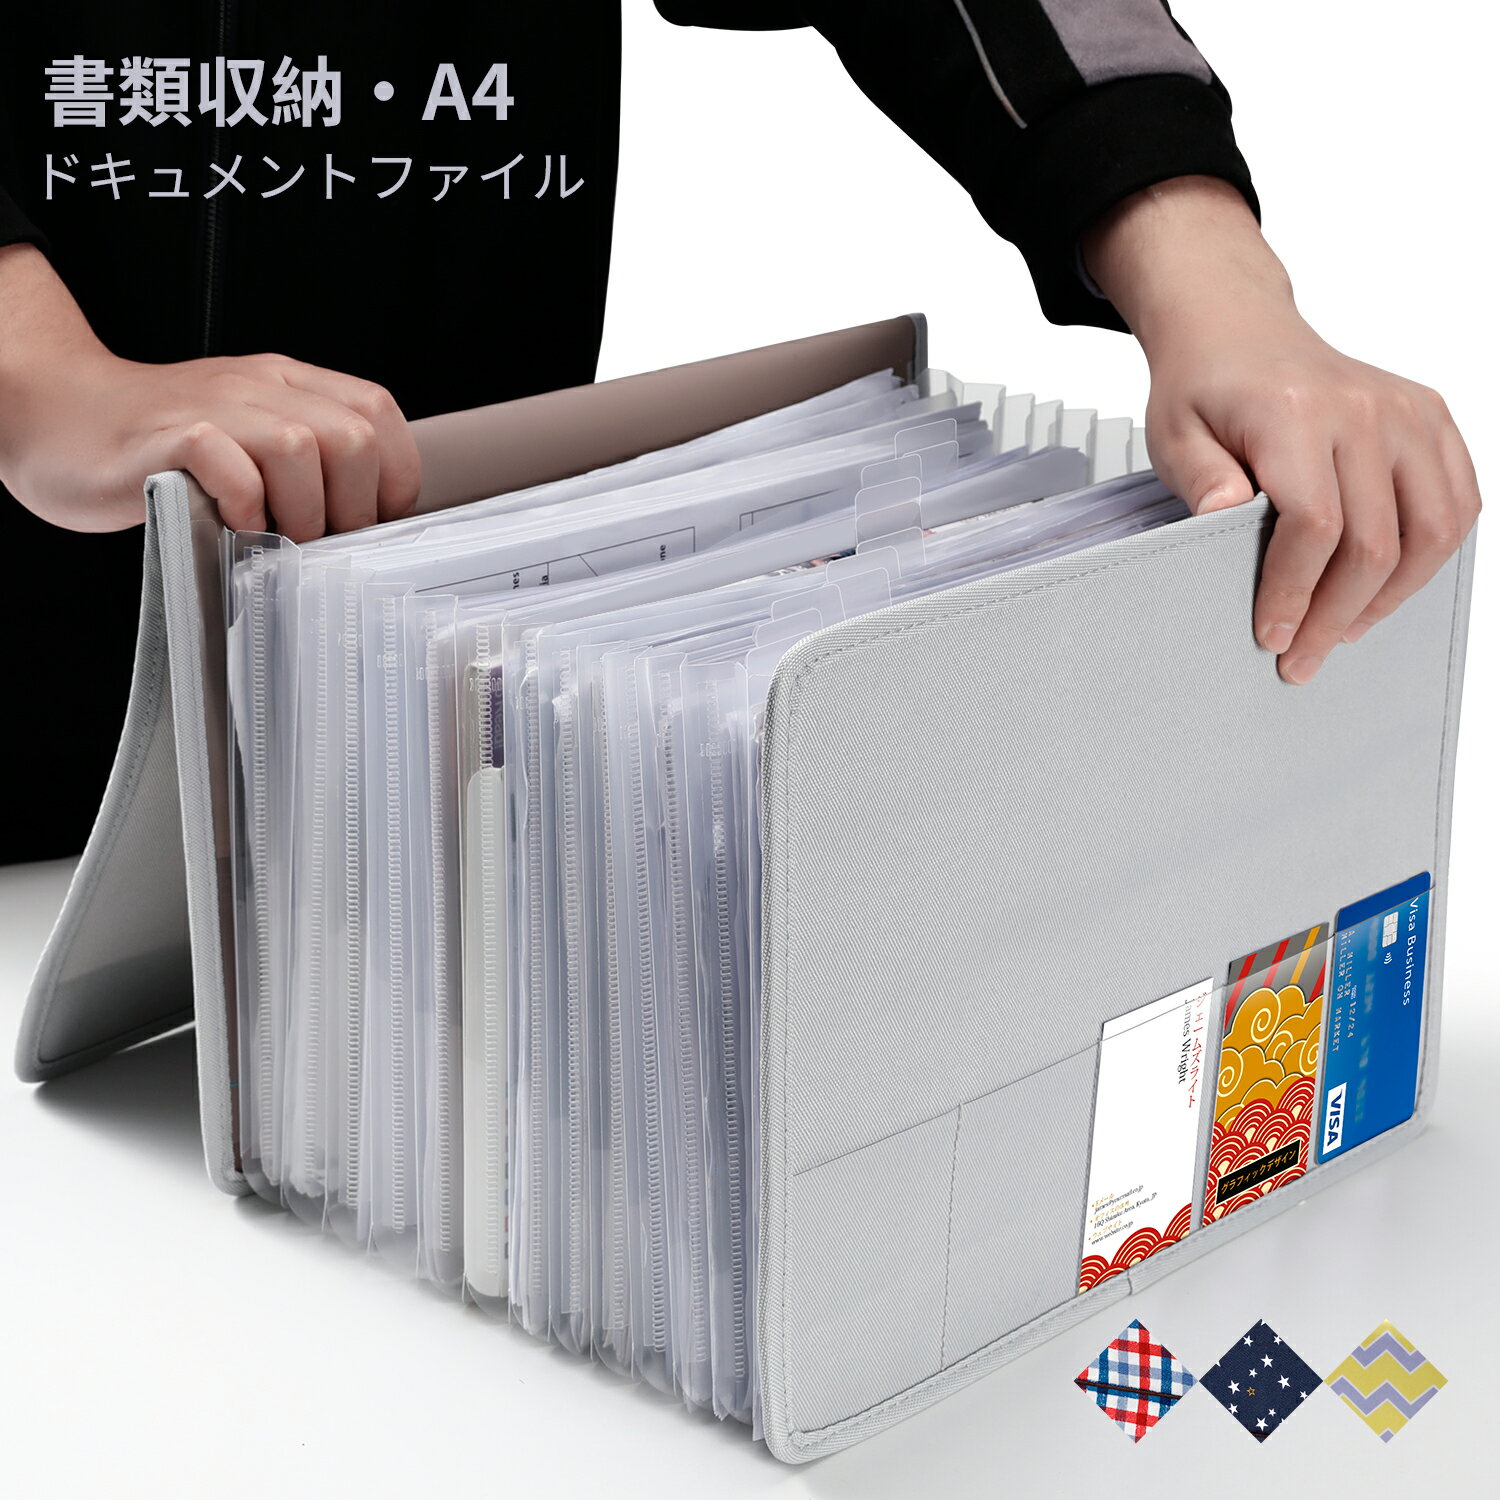 ドキュメントファイル 書類 収納 ファイル A4 書類ケース 持ち運び ファイル収納 おしゃれ A4書類収納 書類整理 ファイル 保管ケース マルチケース 見やすい 書類収納ケース A4サイ 13ファイルボックス 拡張式 収納ボックス コーディオン式 カードポケット付き